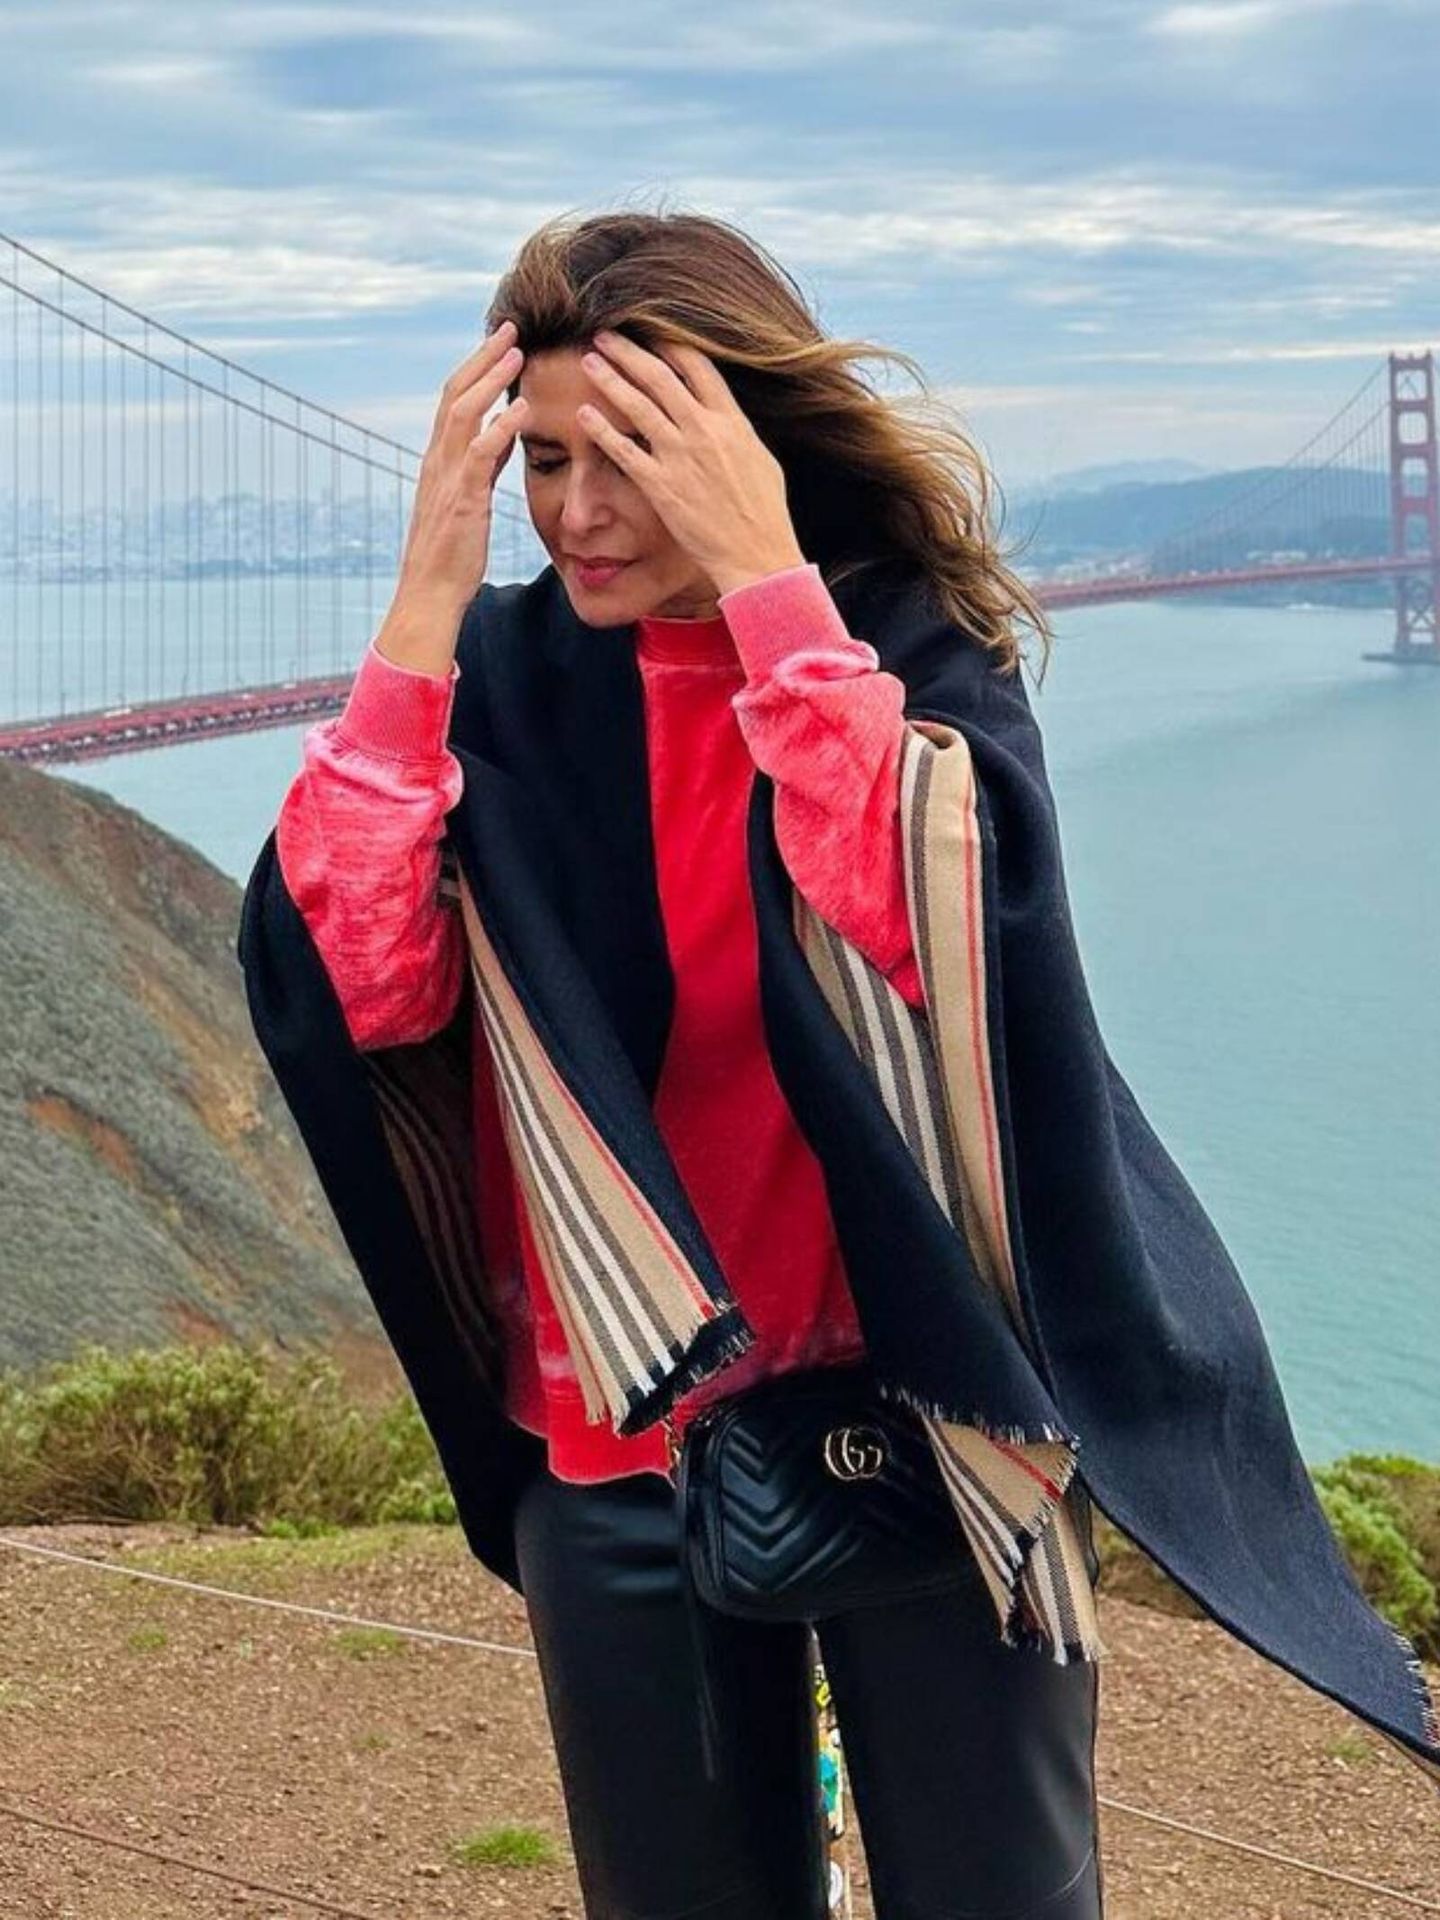 Las claves de los looks de Nuria Roca en San Francisco. (Instagram/@nuriarocagranell)